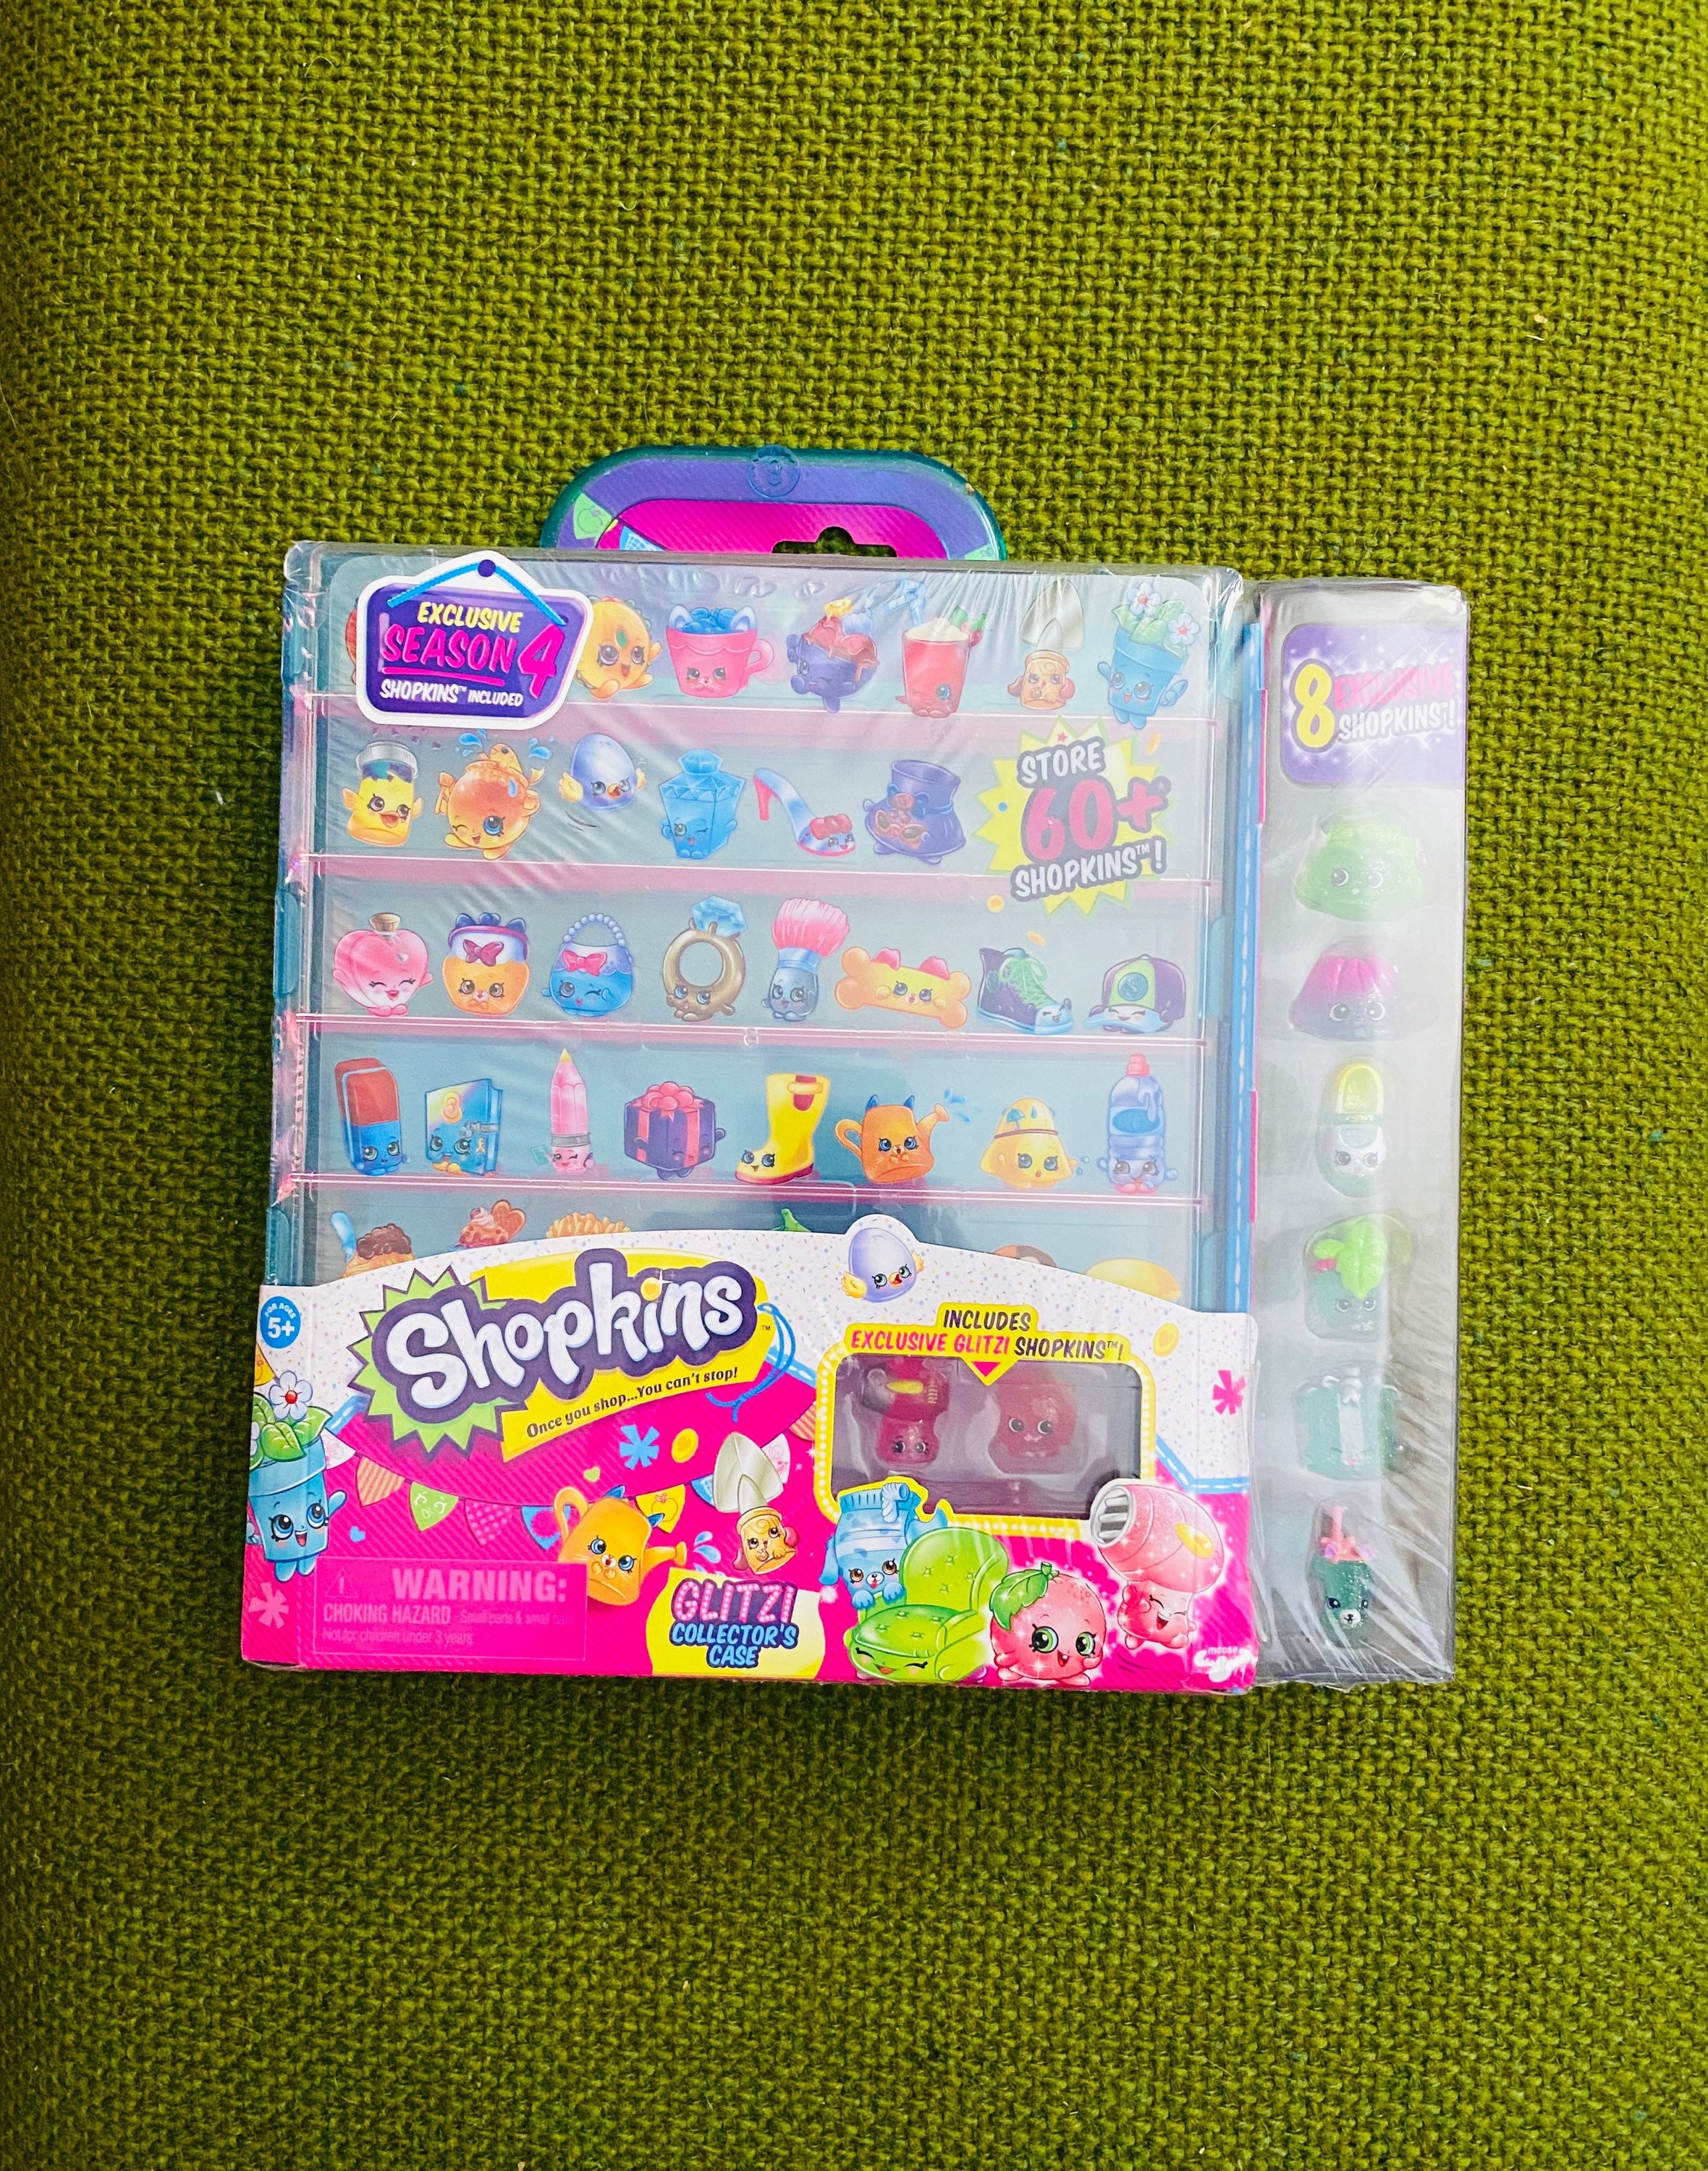 Shopkins Season 4 Glitzi Collectors Case - 8 Exclusive Glitz Shopkins &  Stickers